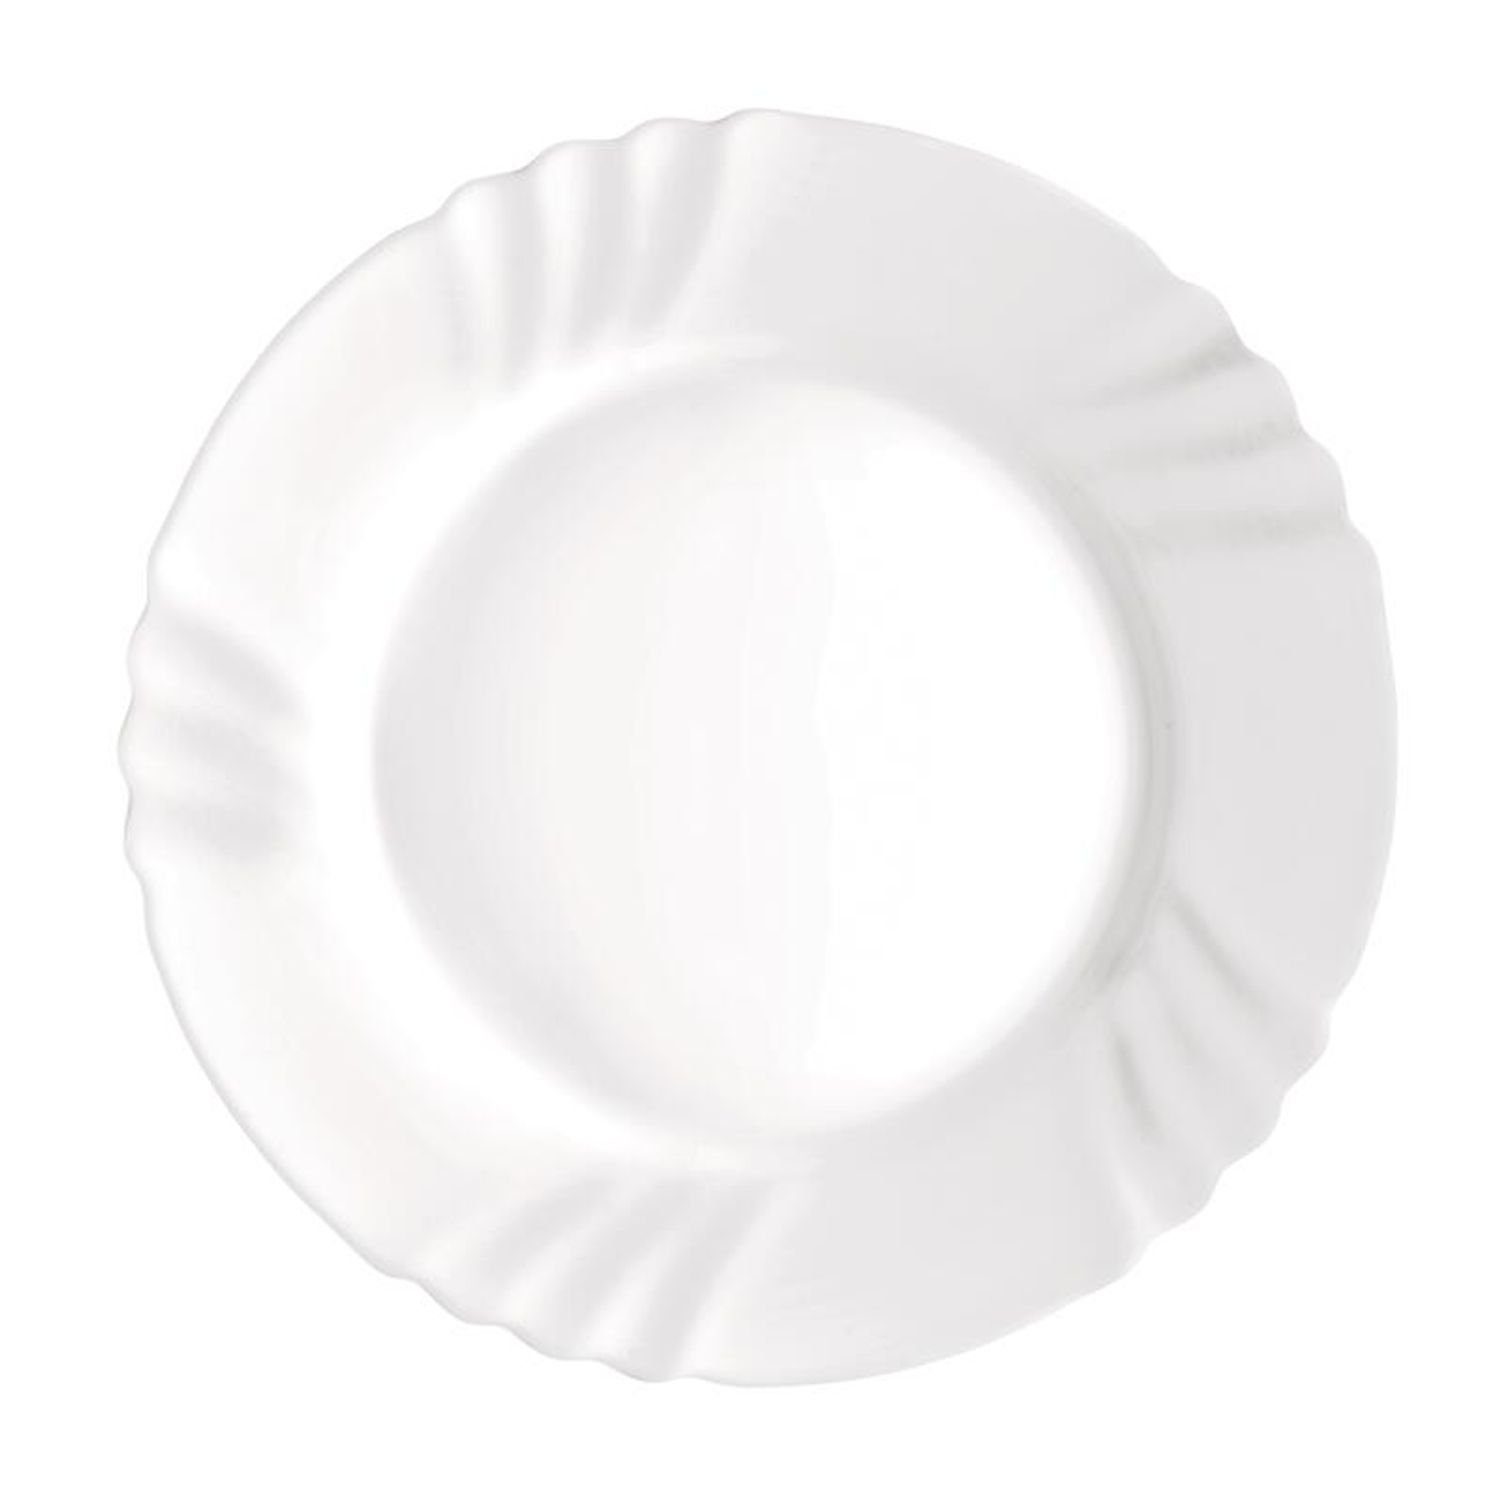 Untersetzer Weiß Flach Teller Essen Bormioli Teller 36x Rocco Speisen Servierplatte Geschirr